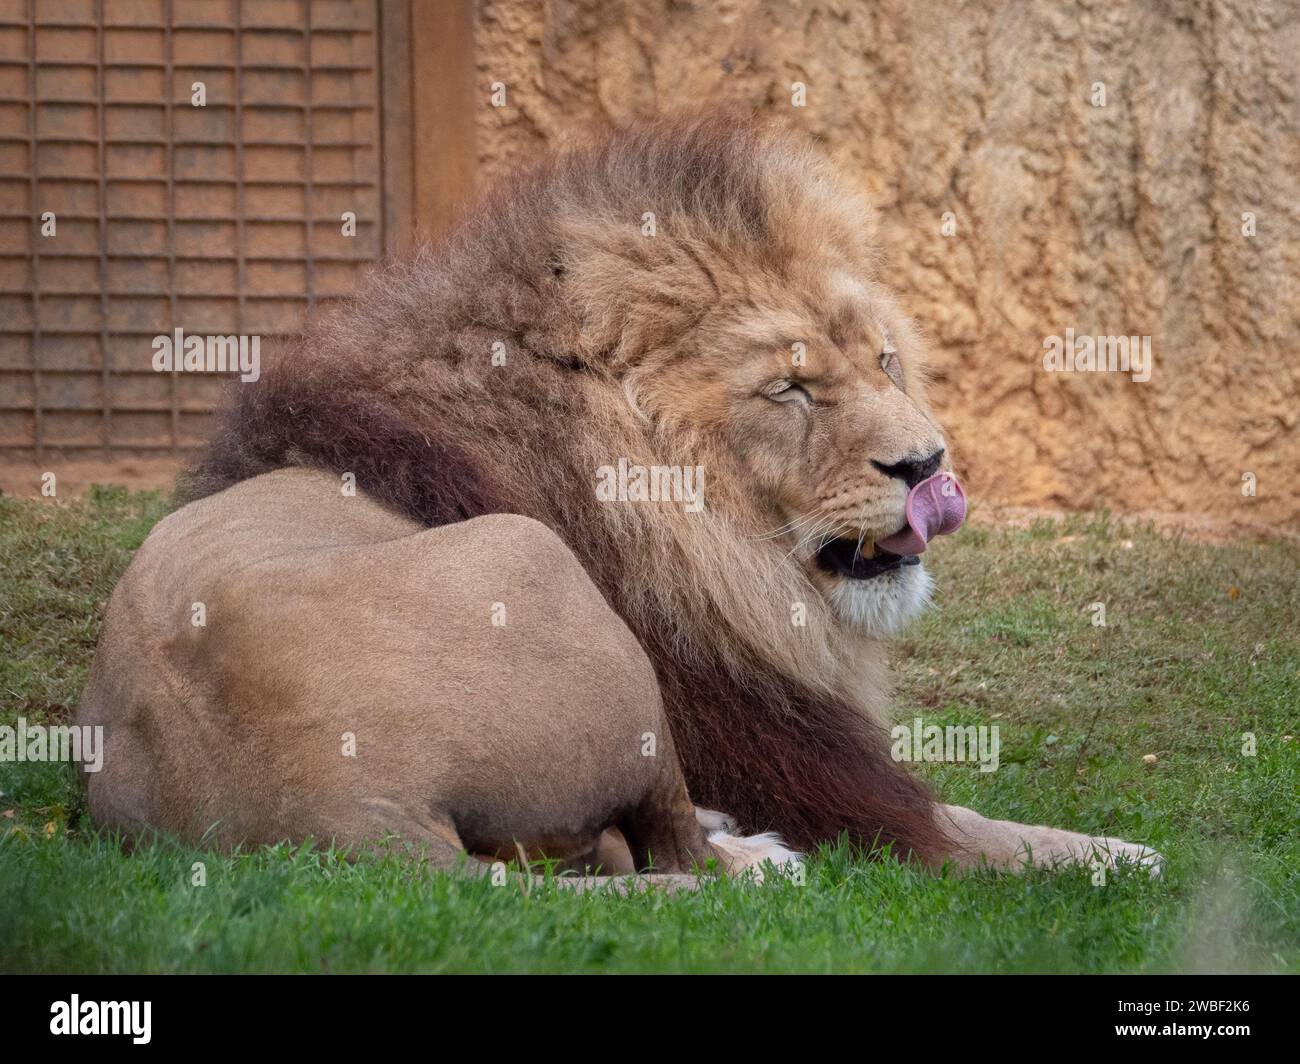 Un lion majestueux se prélassant dans son habitat de zoo avec sa langue sortie, se prélasser au soleil Banque D'Images